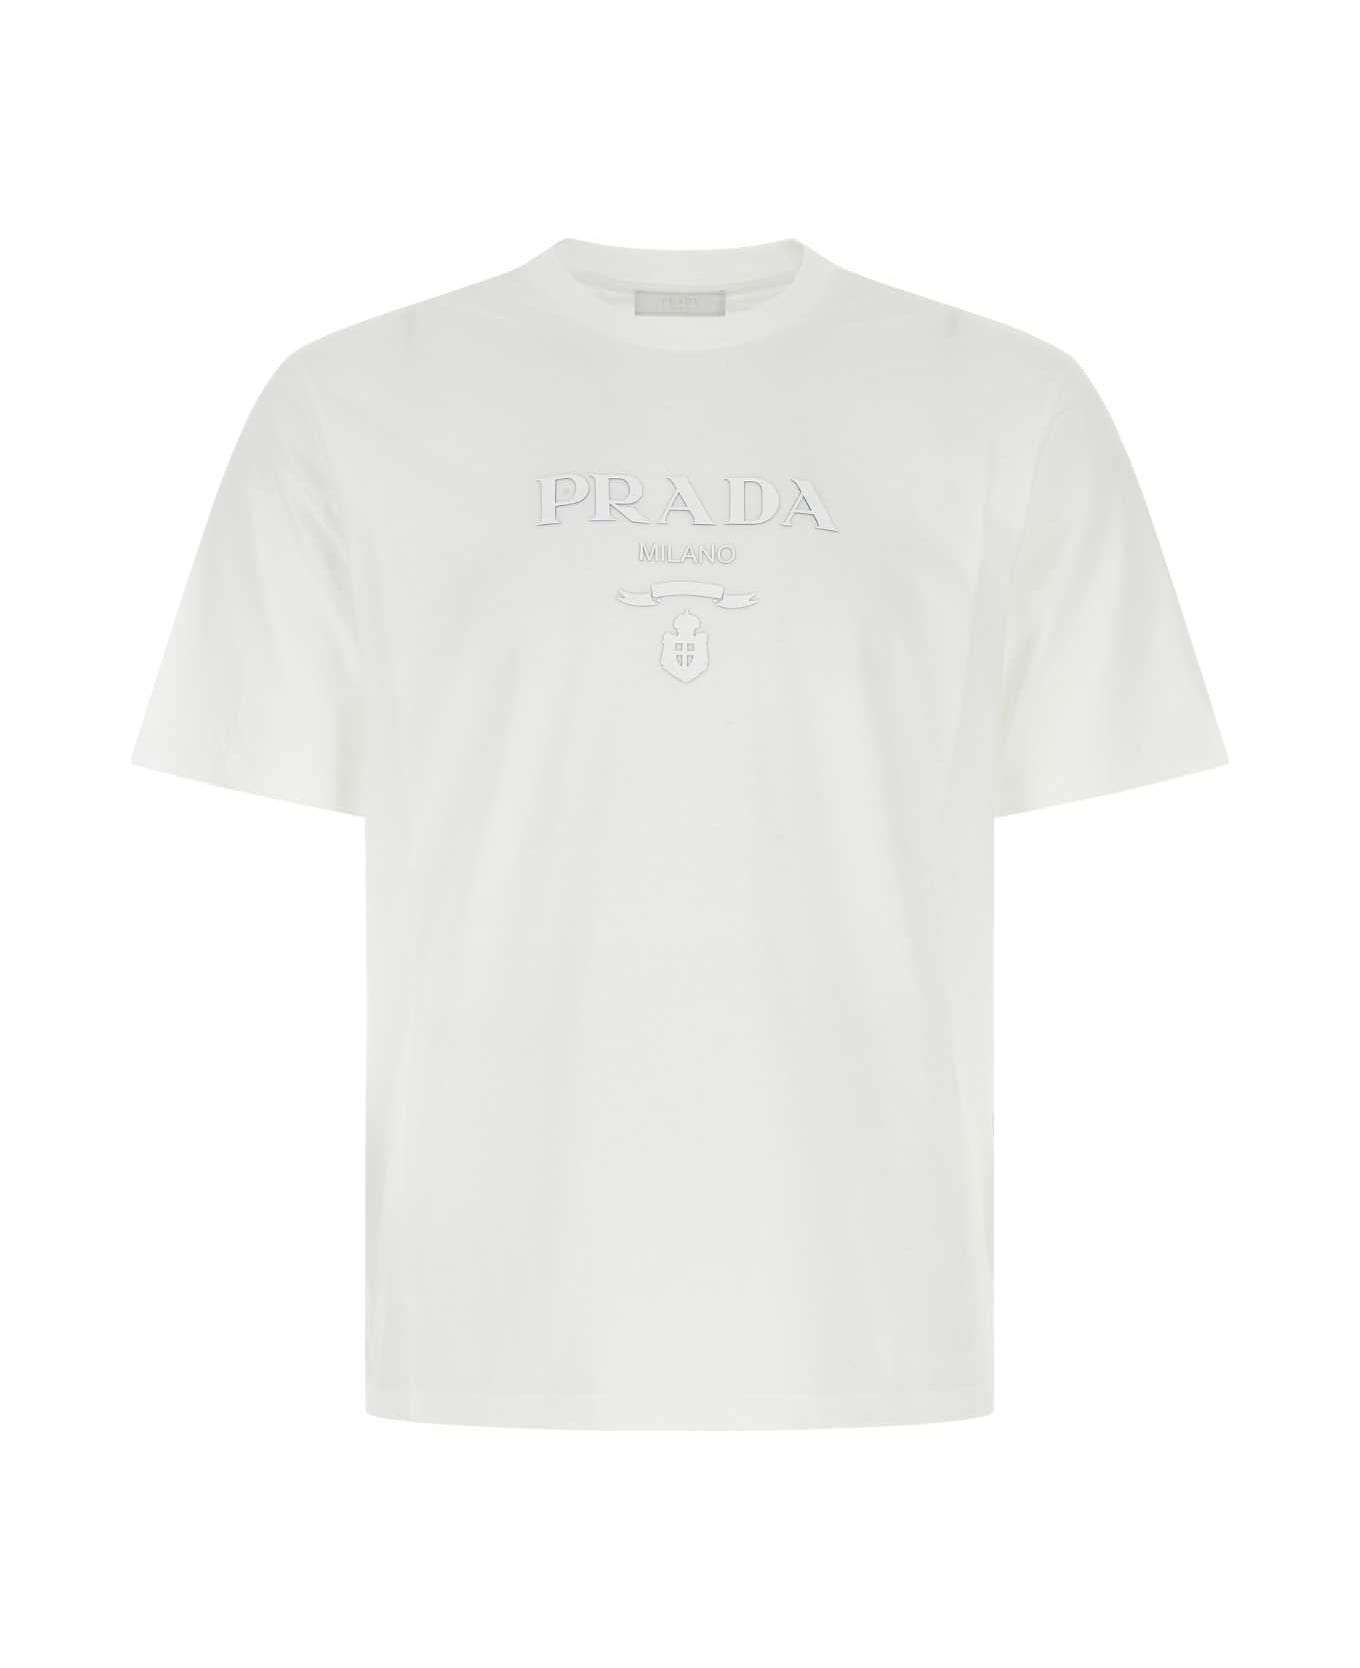 Prada White Cotton T-shirt - F0009